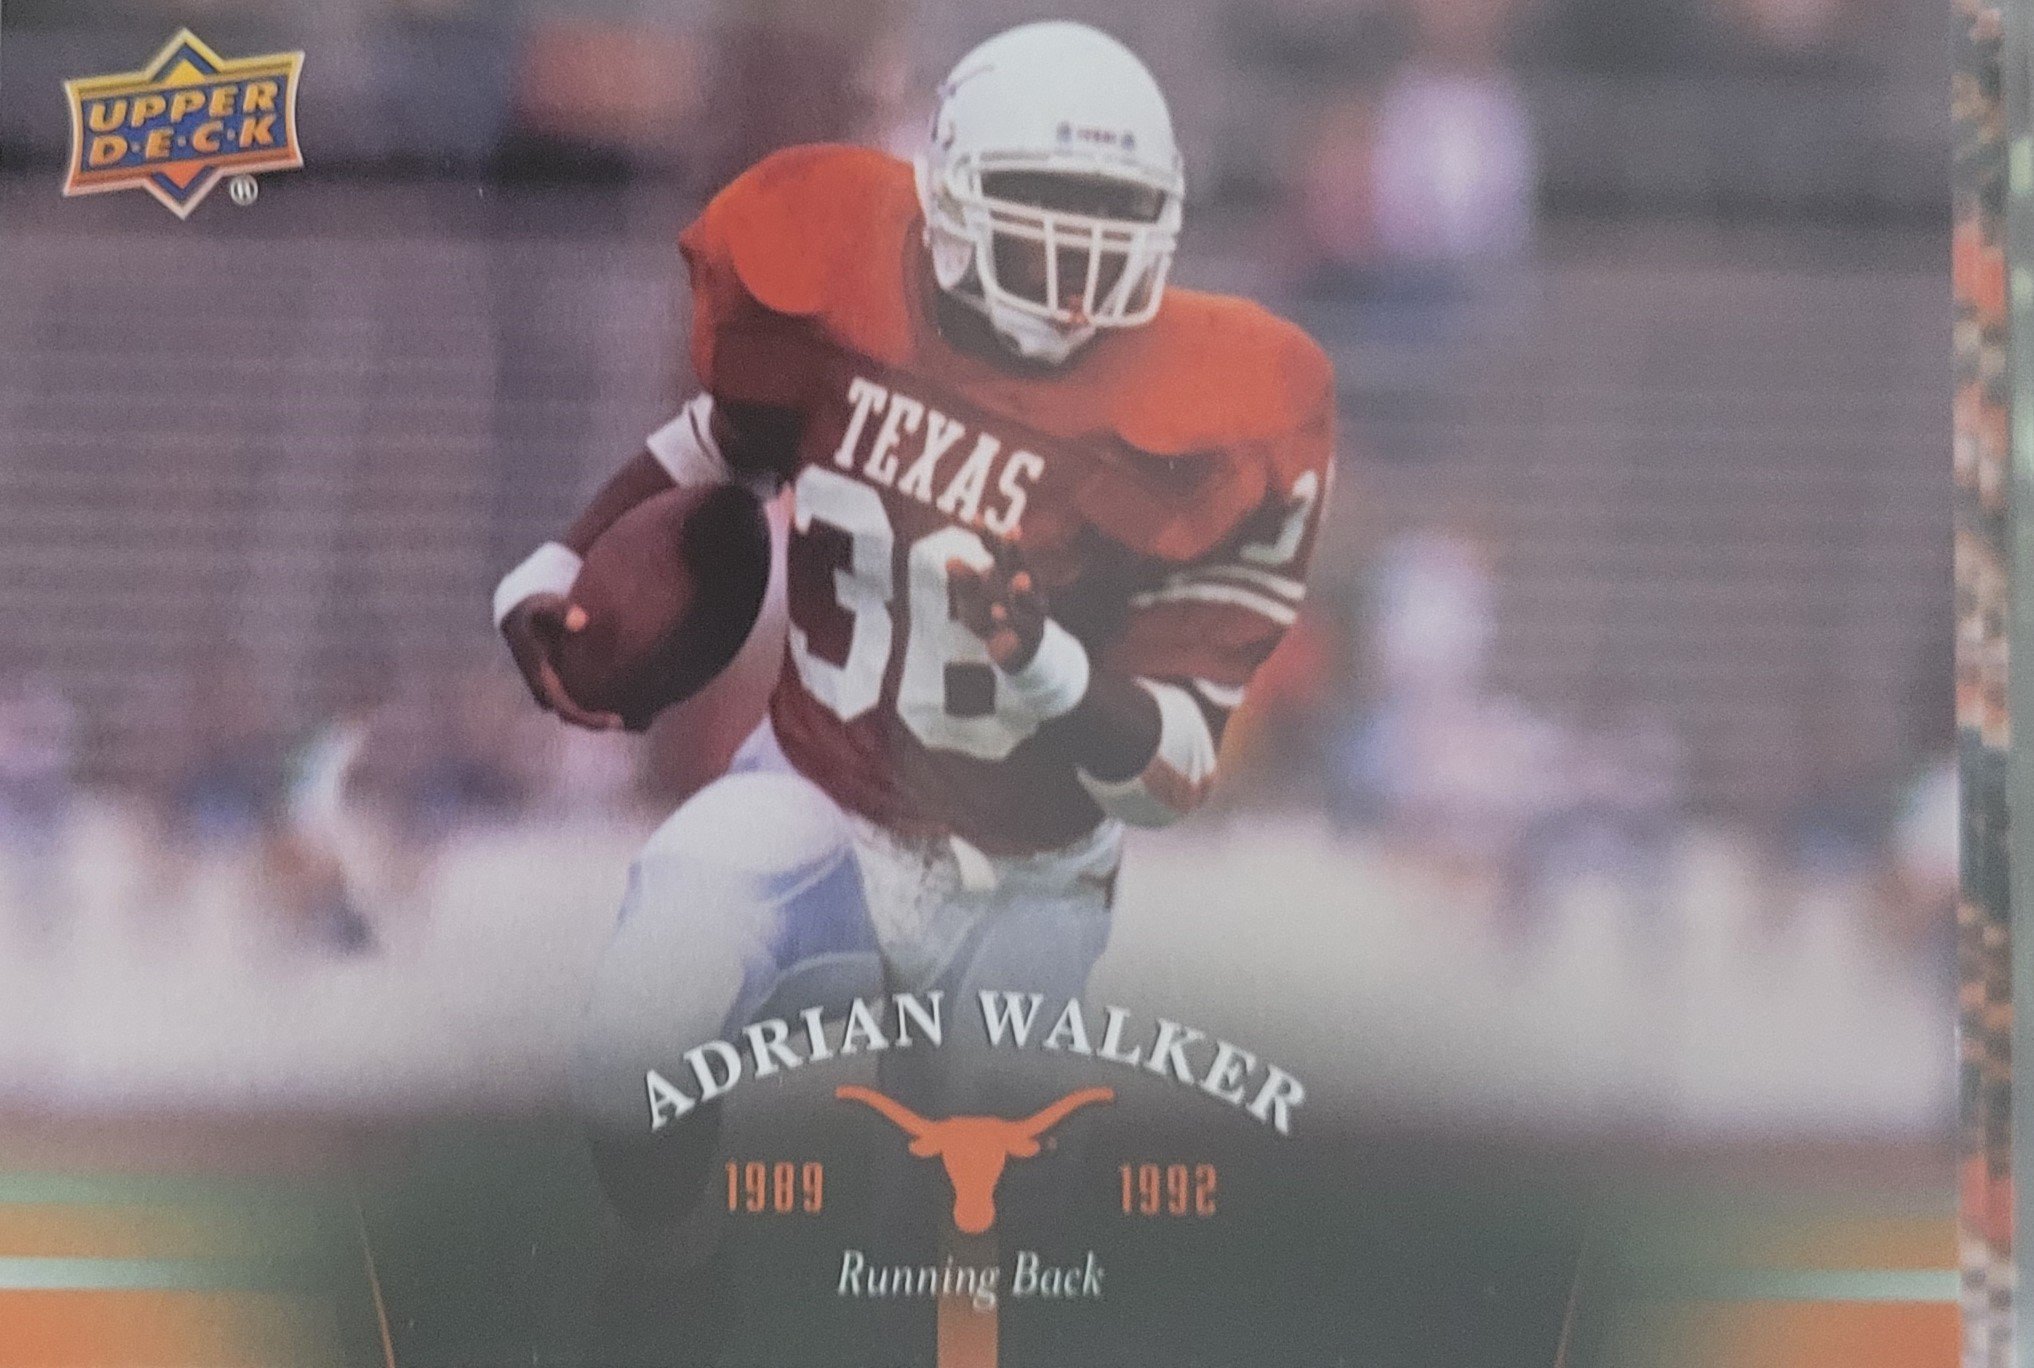 1991 Adrian Walker